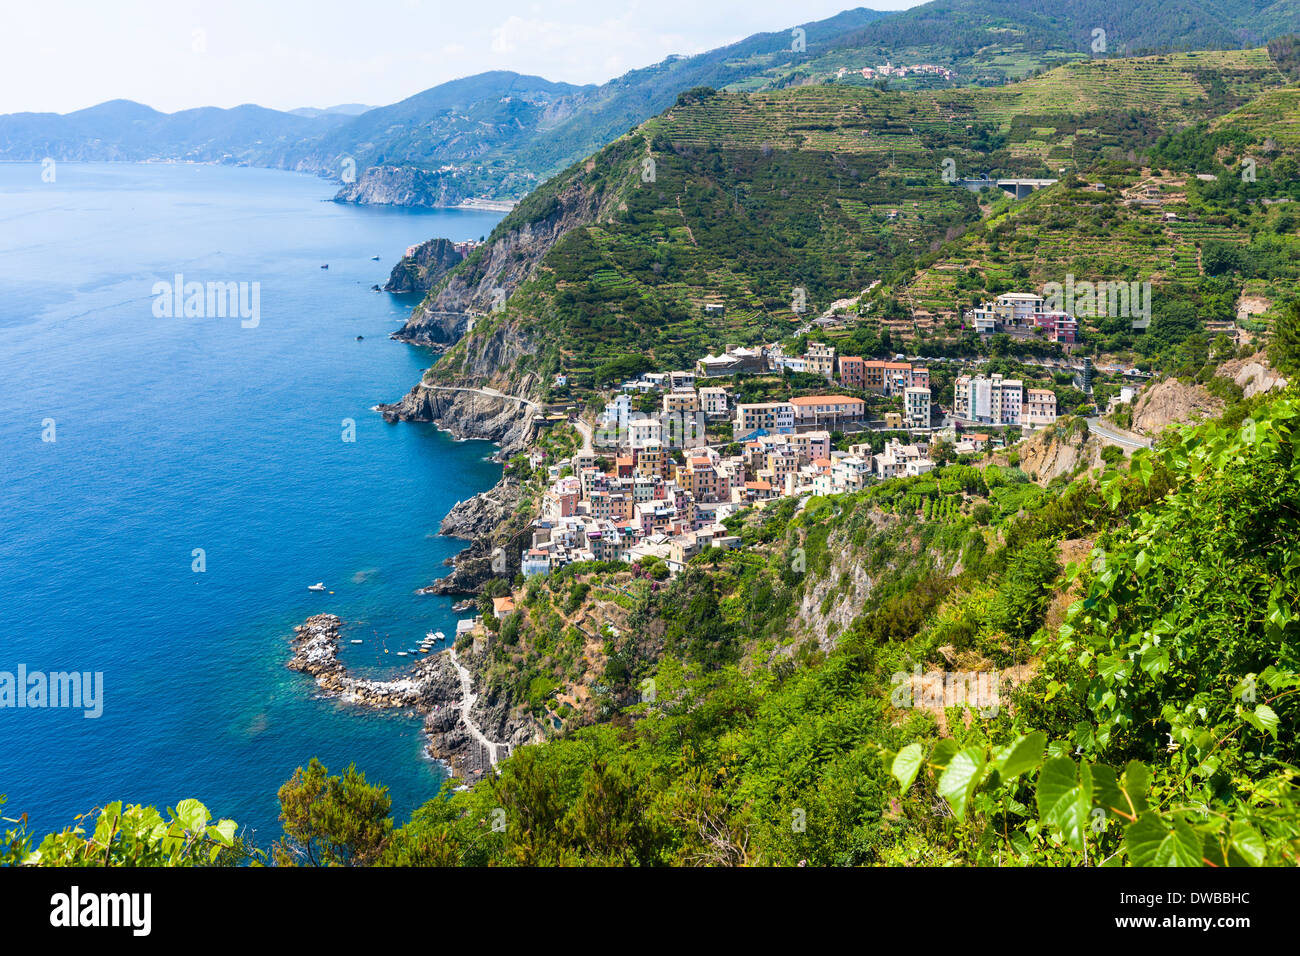 Italy, Liguria, La Spezia, Cinque Terre, Riomaggiore, view to coastline and village Stock Photo